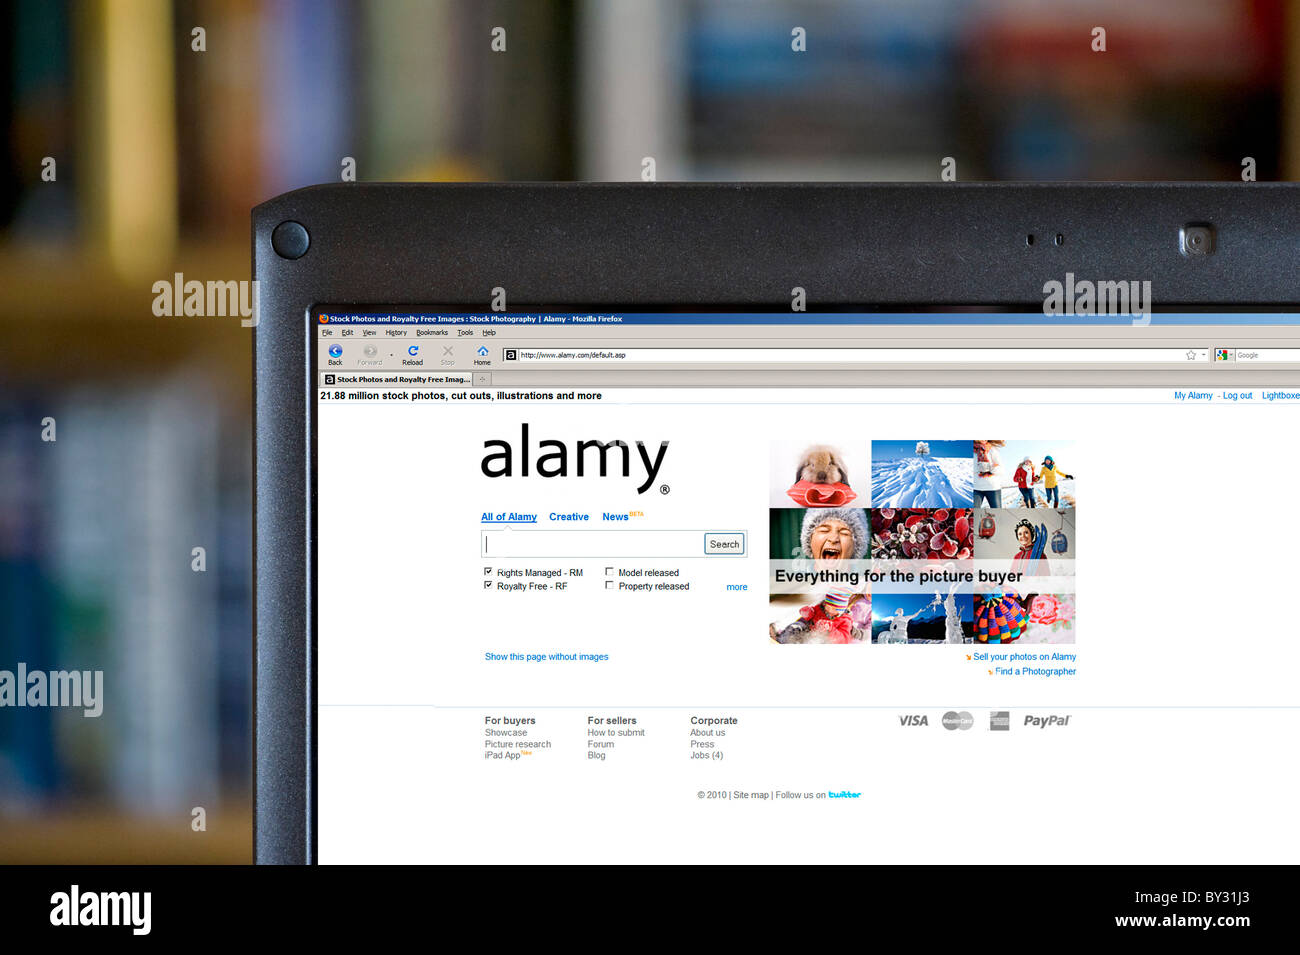 how to download alamy.com